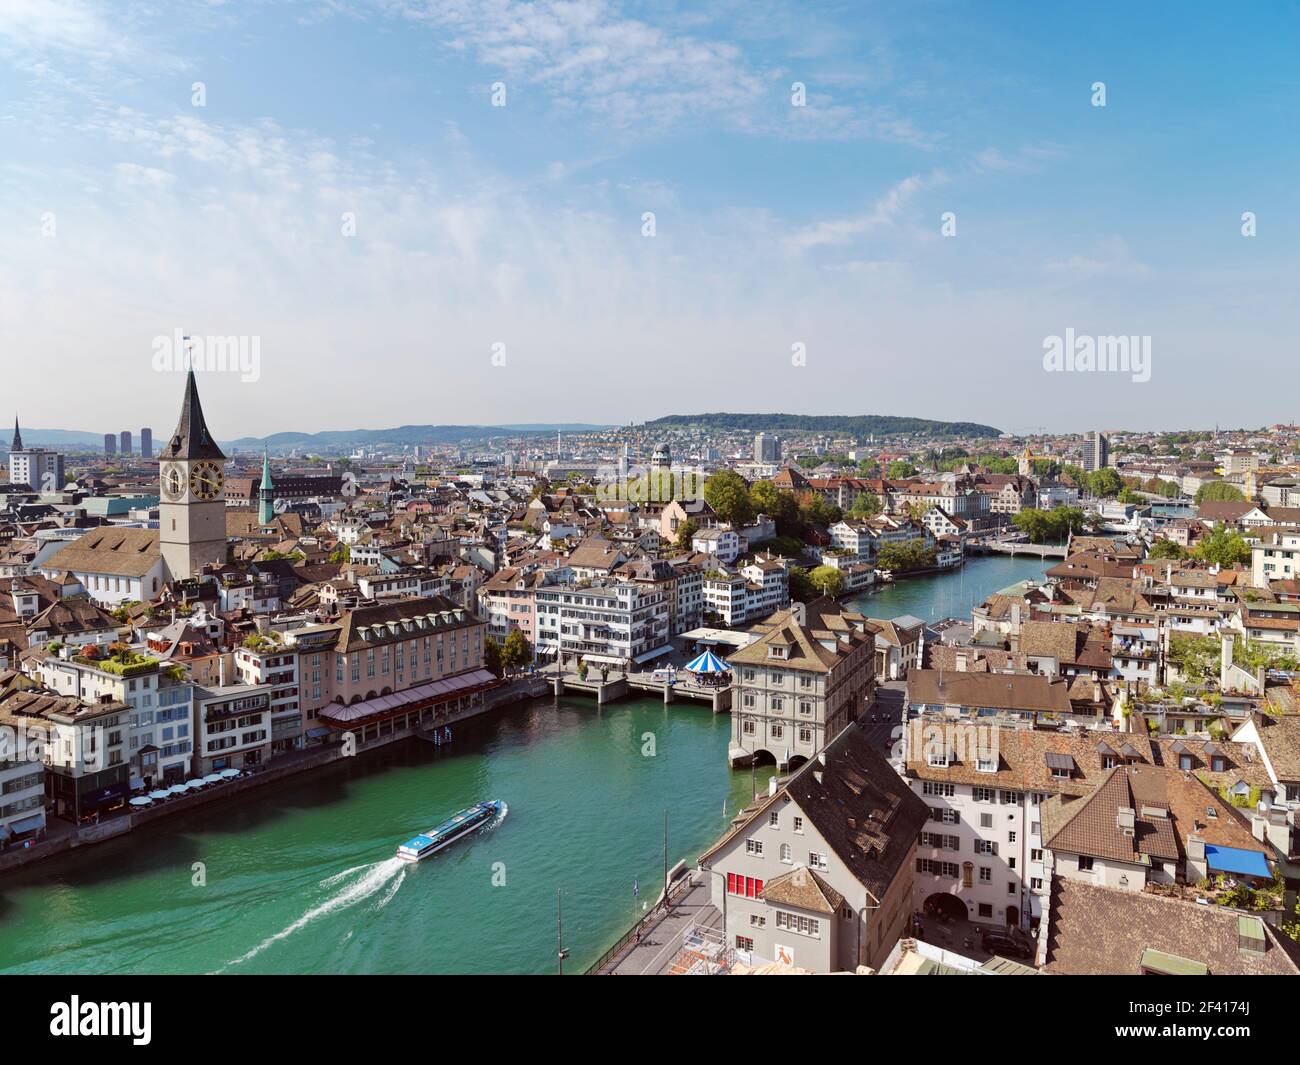 Vieille ville de Zurich vue sur la ville et le clocher de l'église Saint-Pierre et la rivière Limmat Banque D'Images